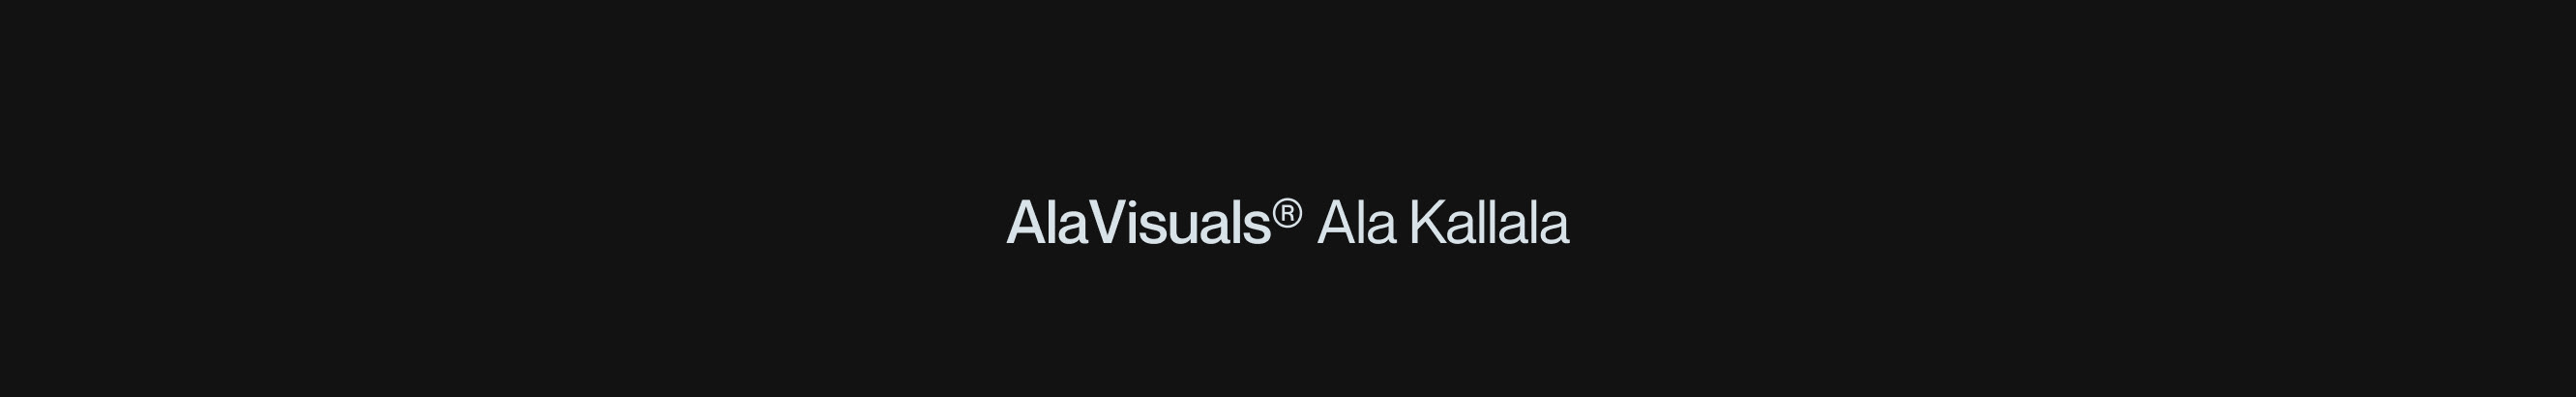 Ala Kallala's profile banner